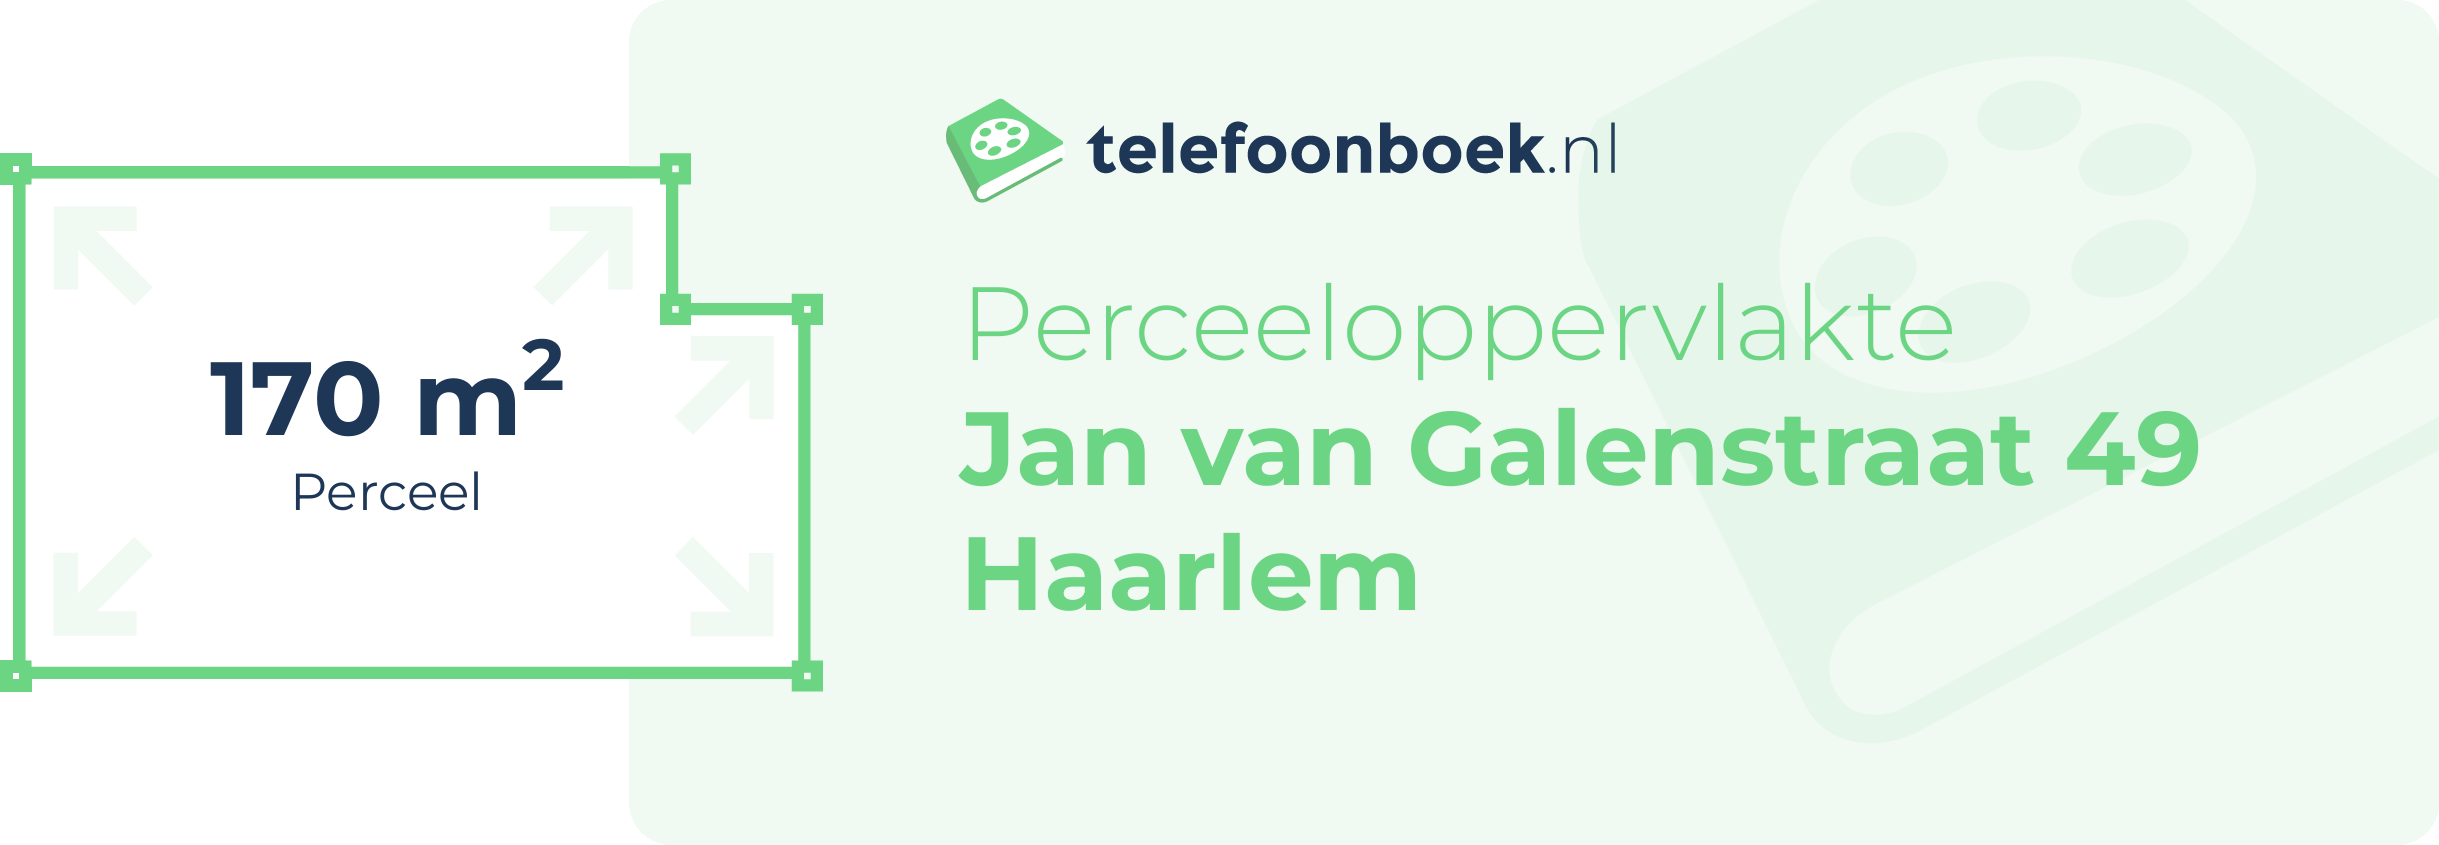 Perceeloppervlakte Jan Van Galenstraat 49 Haarlem